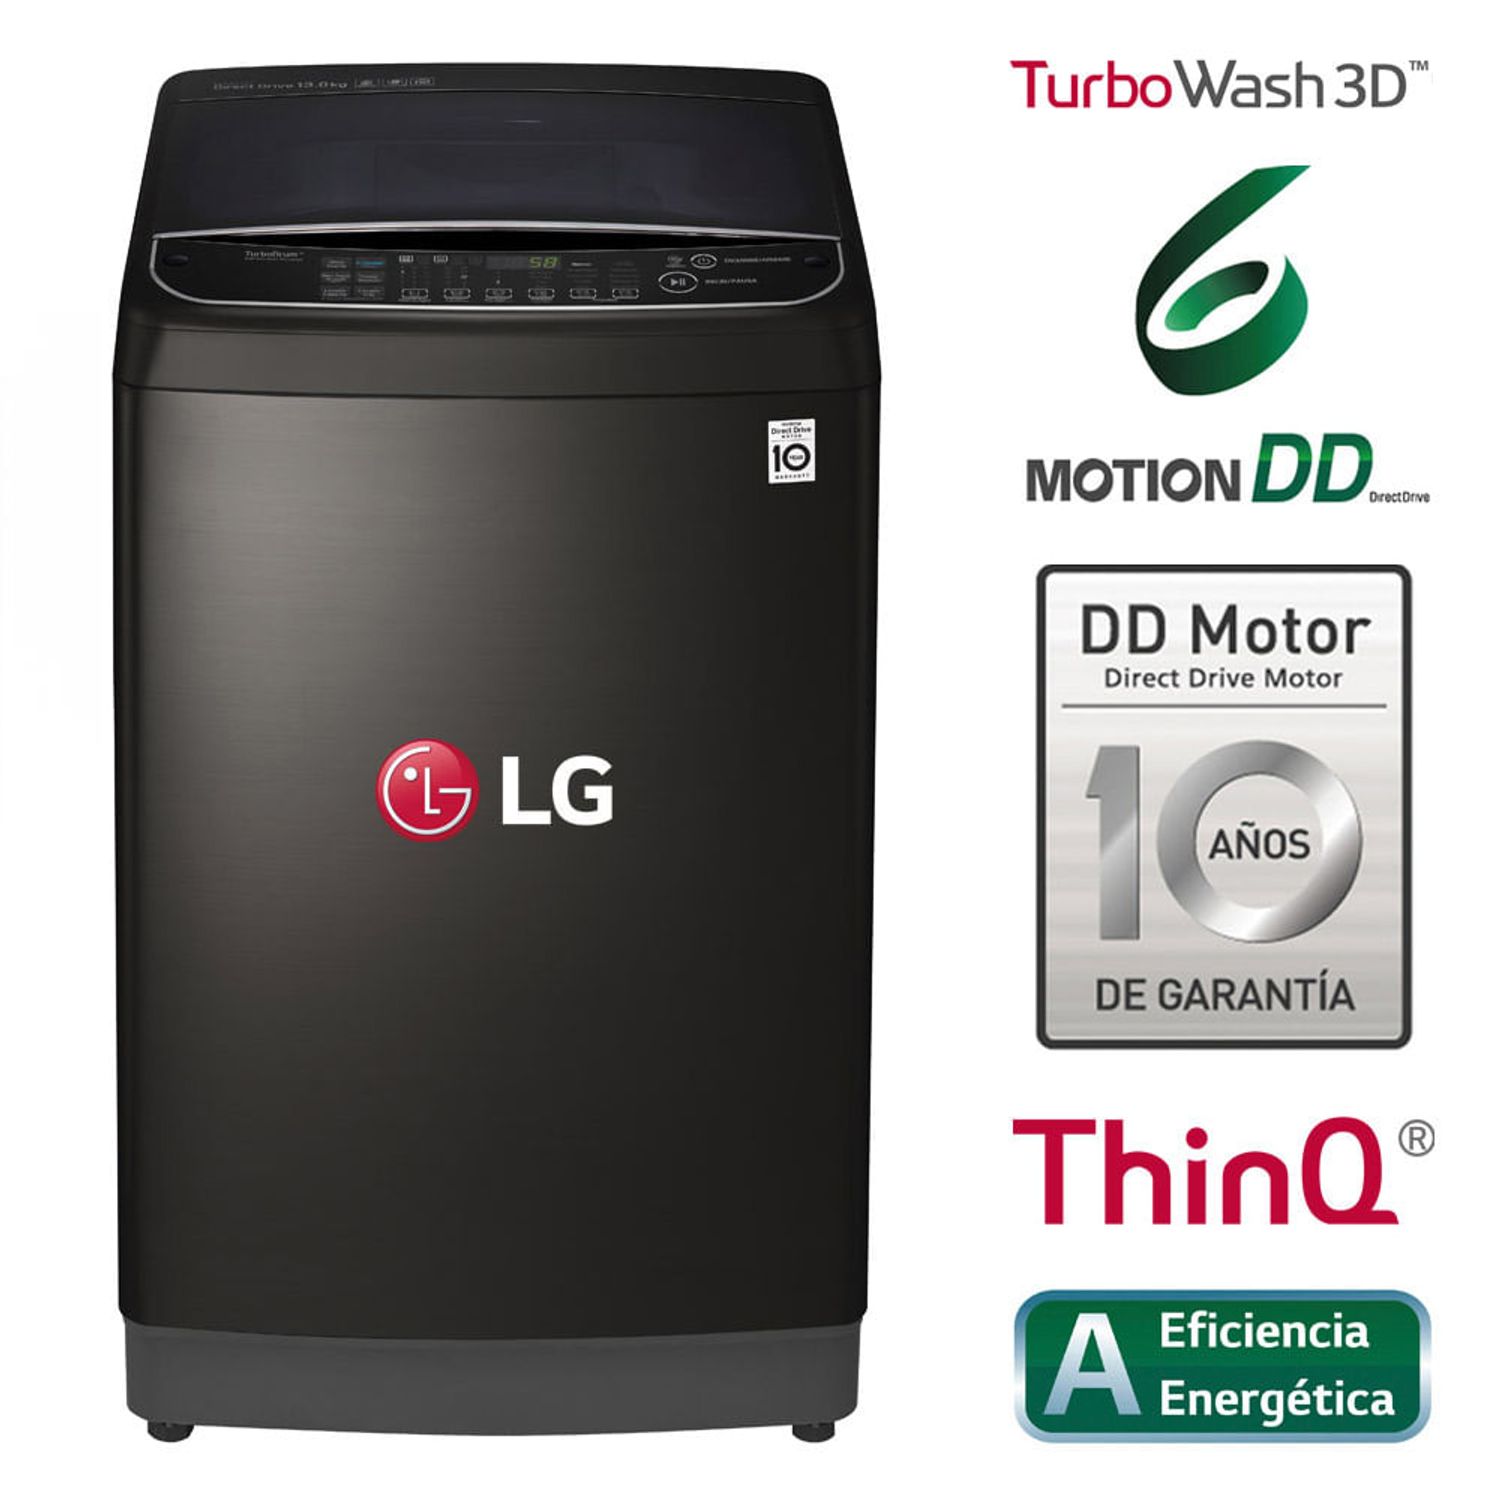 Lavadora LG TurboWash 3D Carga Superior WT13BS6H 13 Kg Negra | Oechsle.pe Oechsle